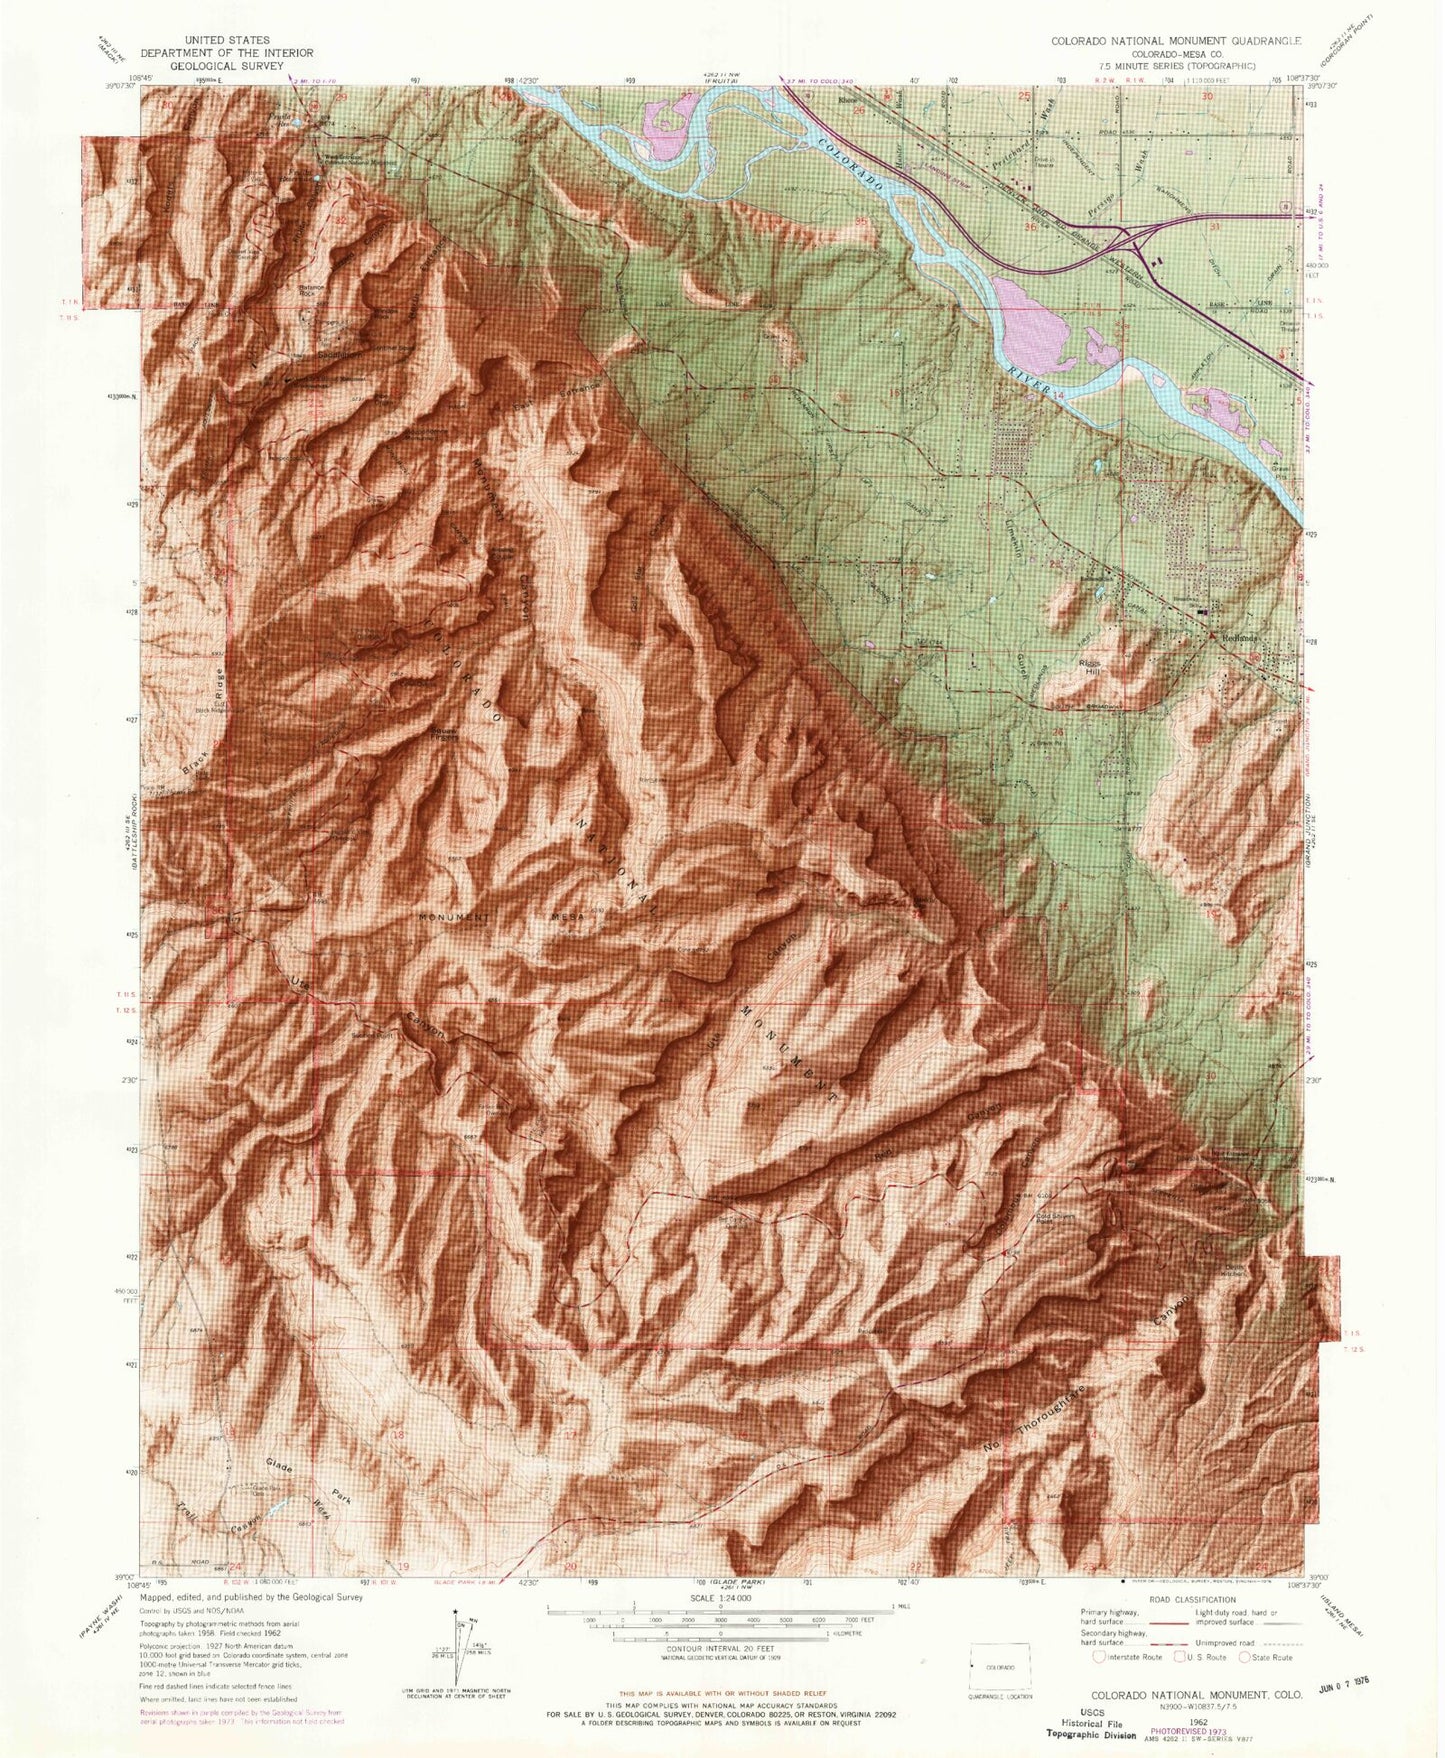 Classic USGS Colorado National Monument Colorado 7.5'x7.5' Topo Map Image